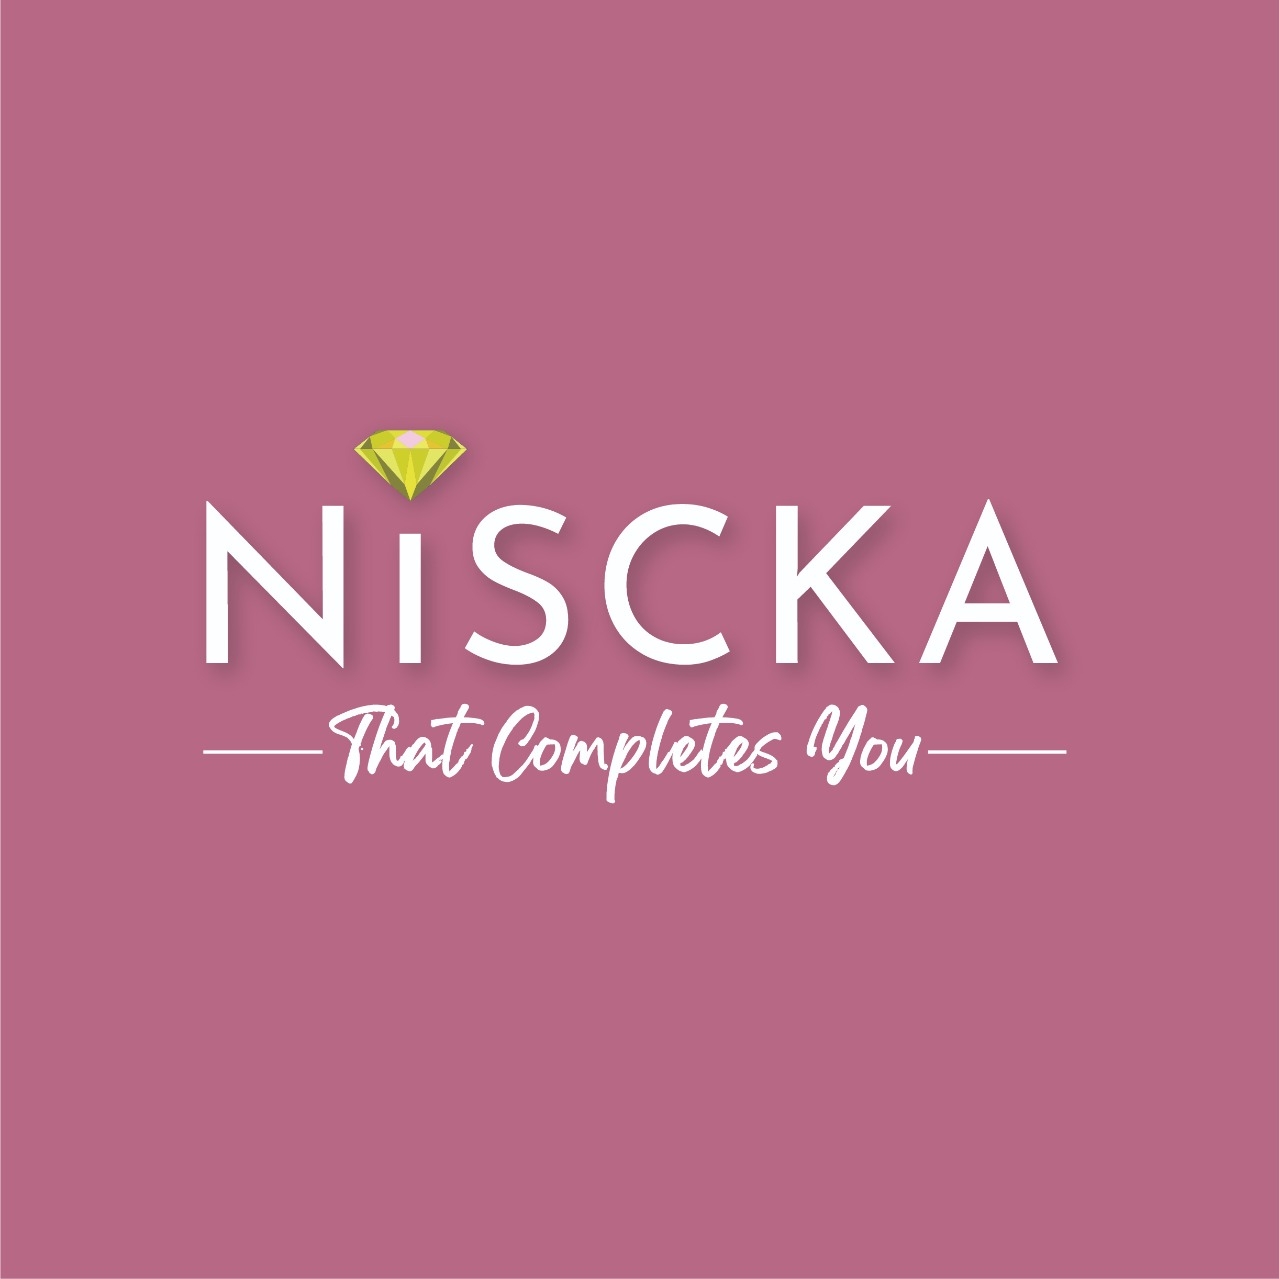 Niscka